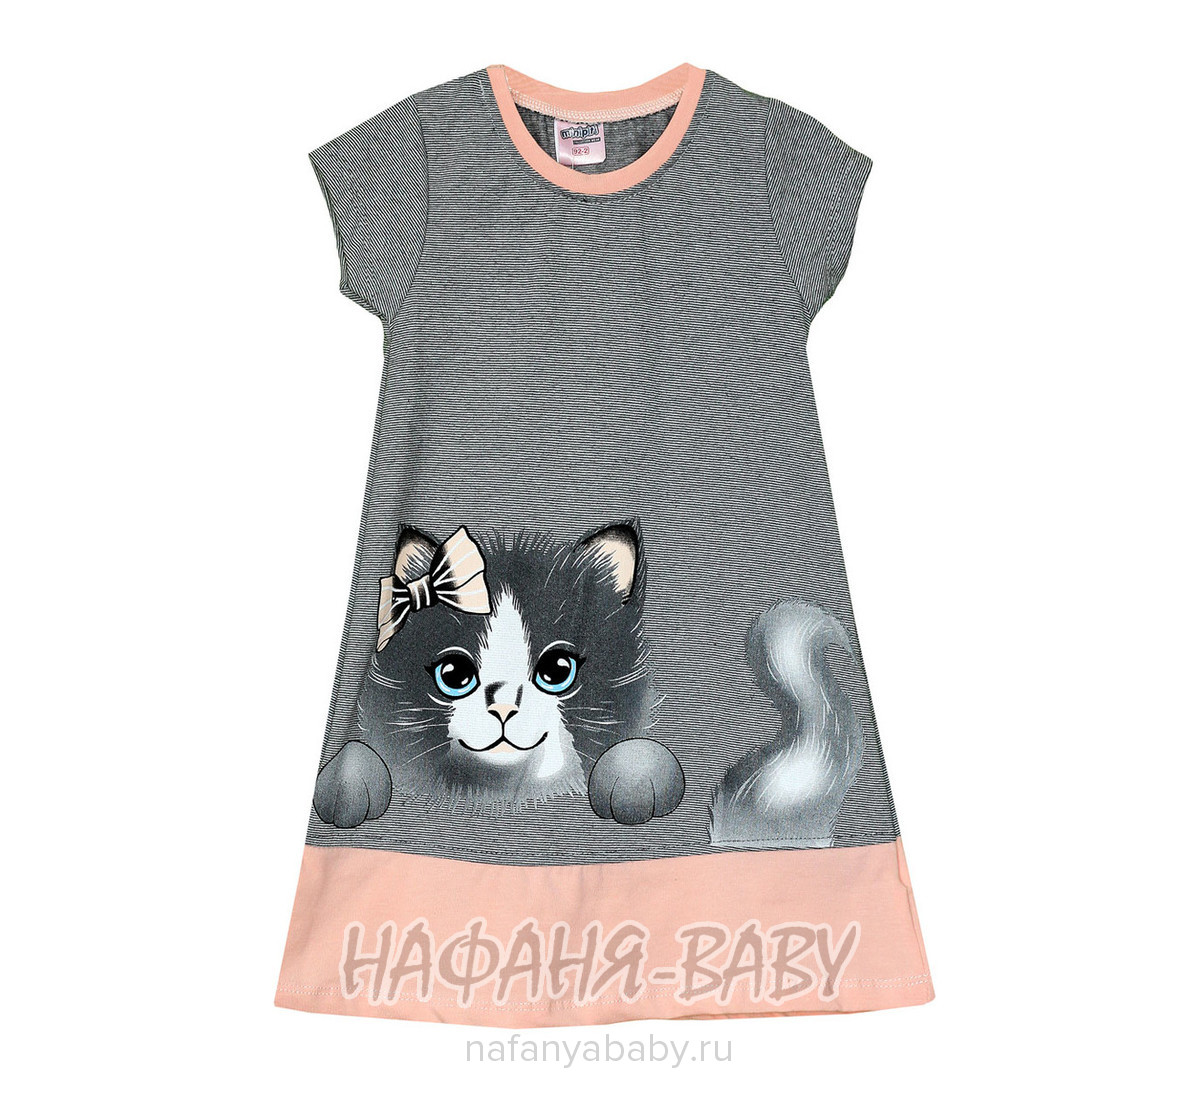 Детское платье Mini Piti, купить в интернет магазине Нафаня. арт: 4641.